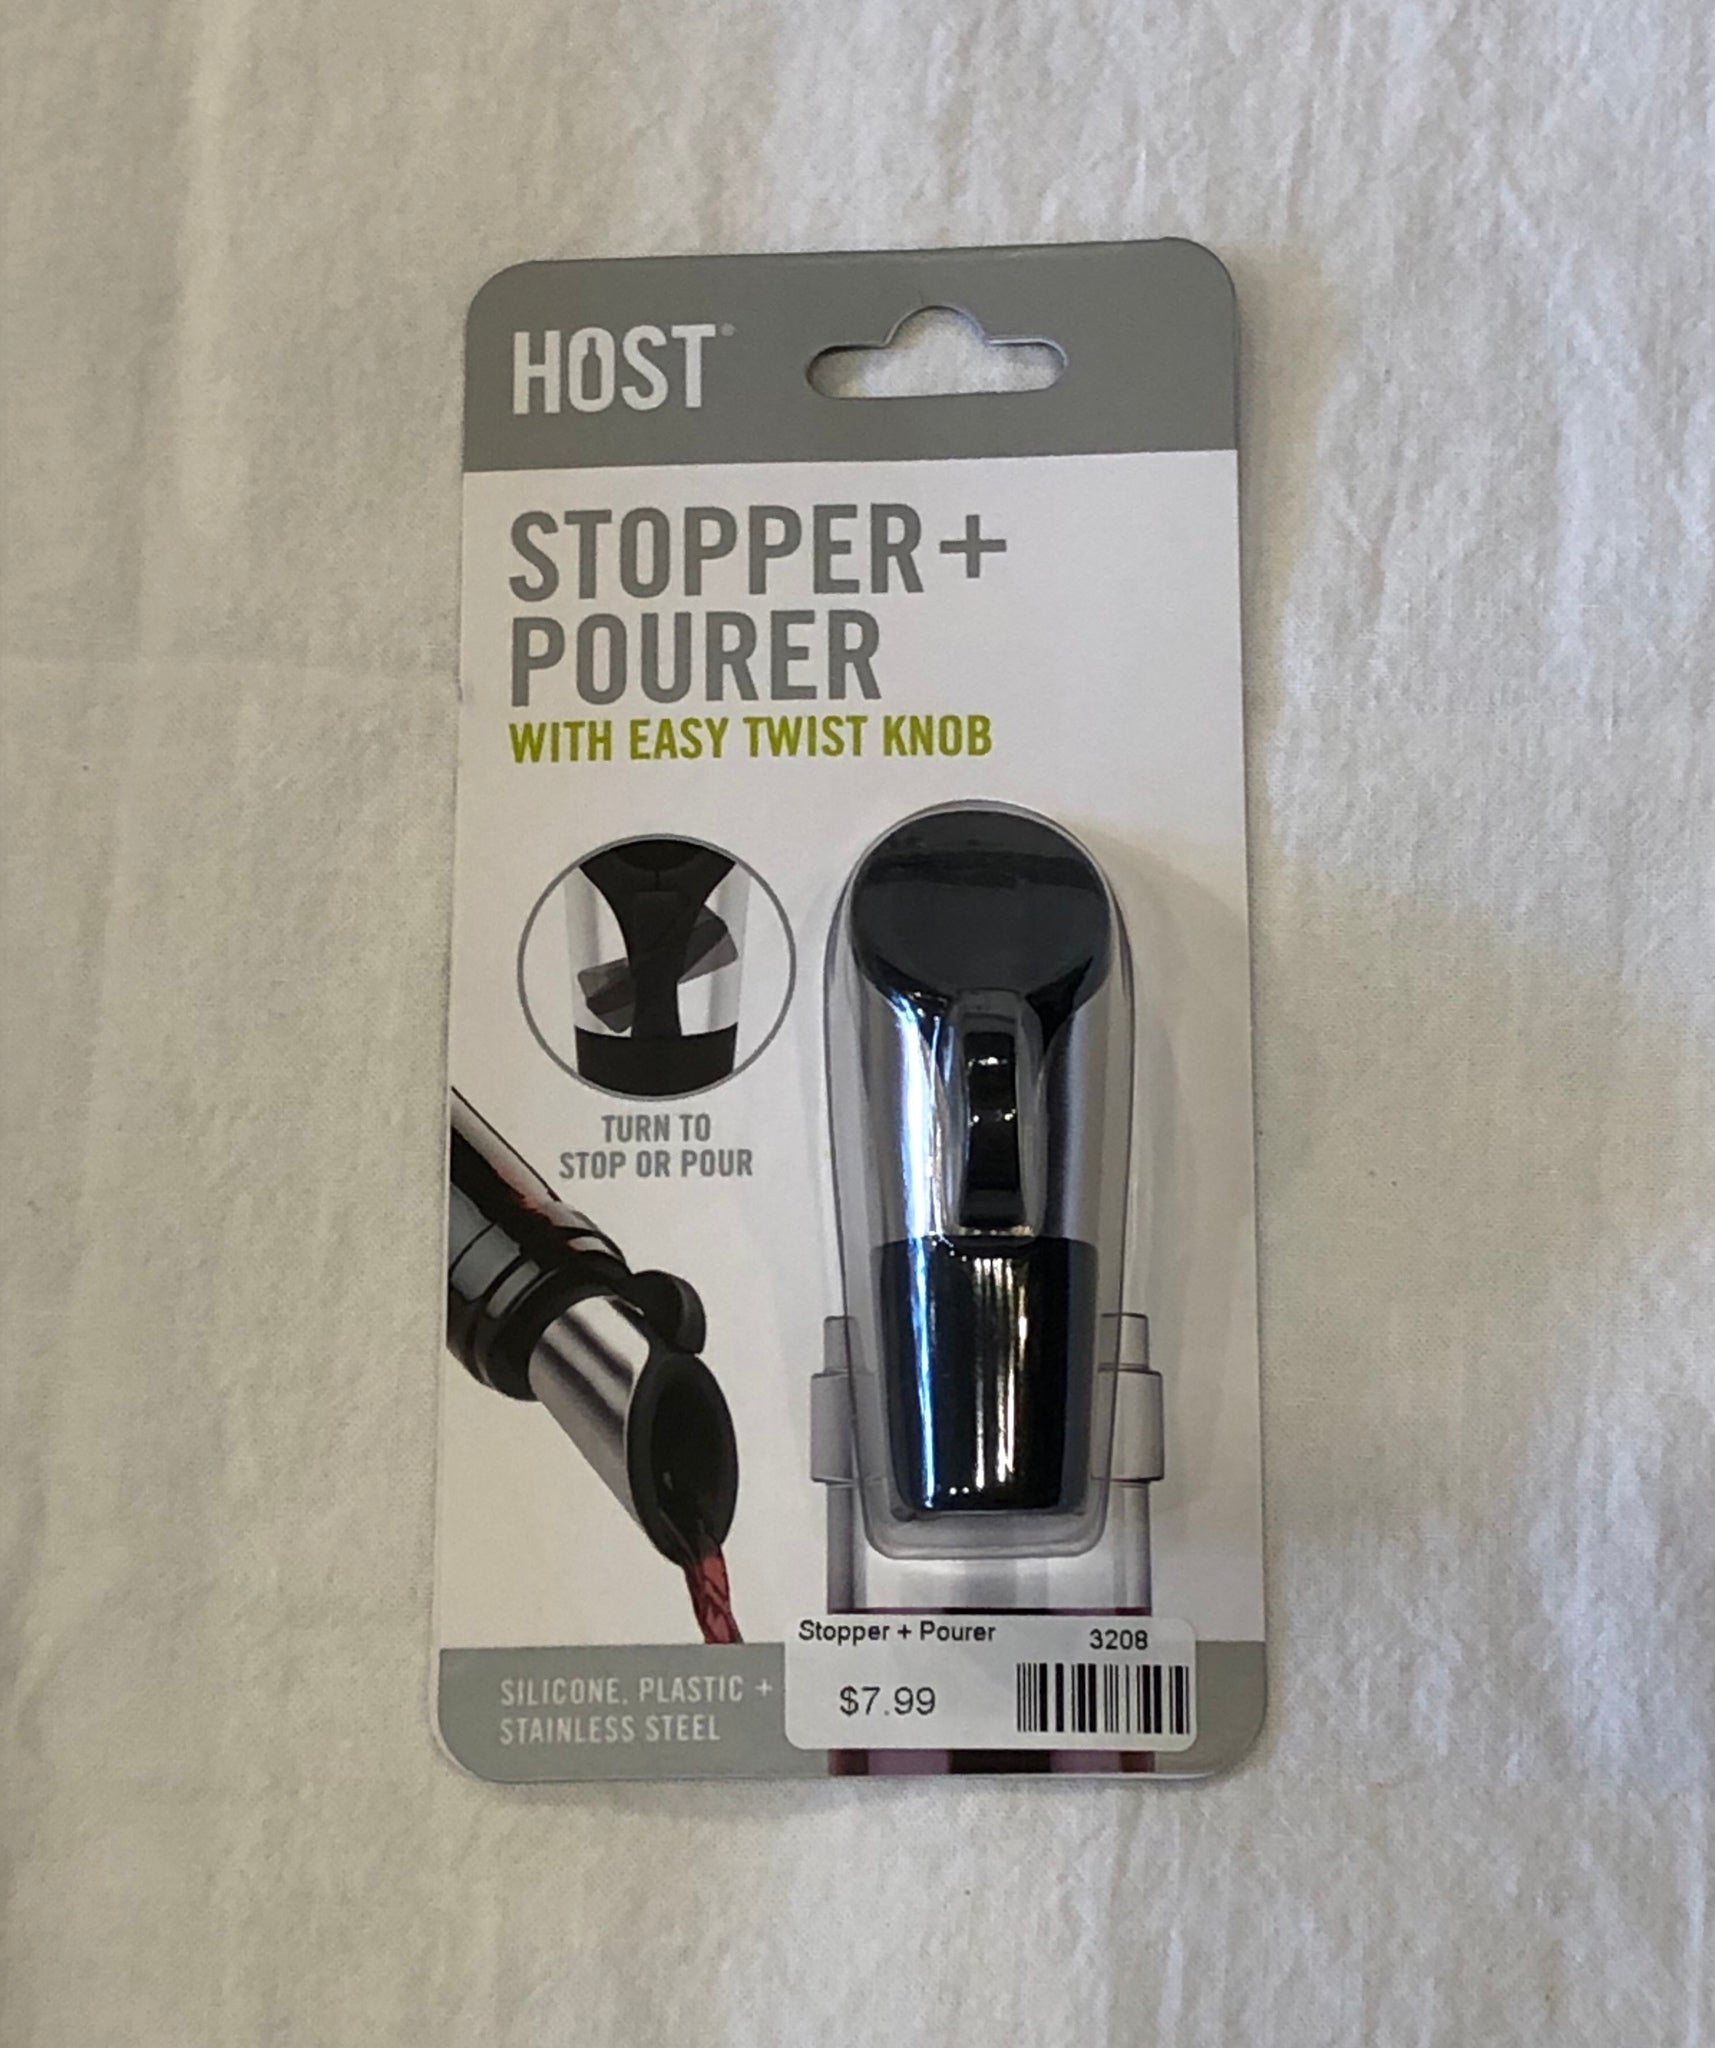 Host Stopper + Pourer